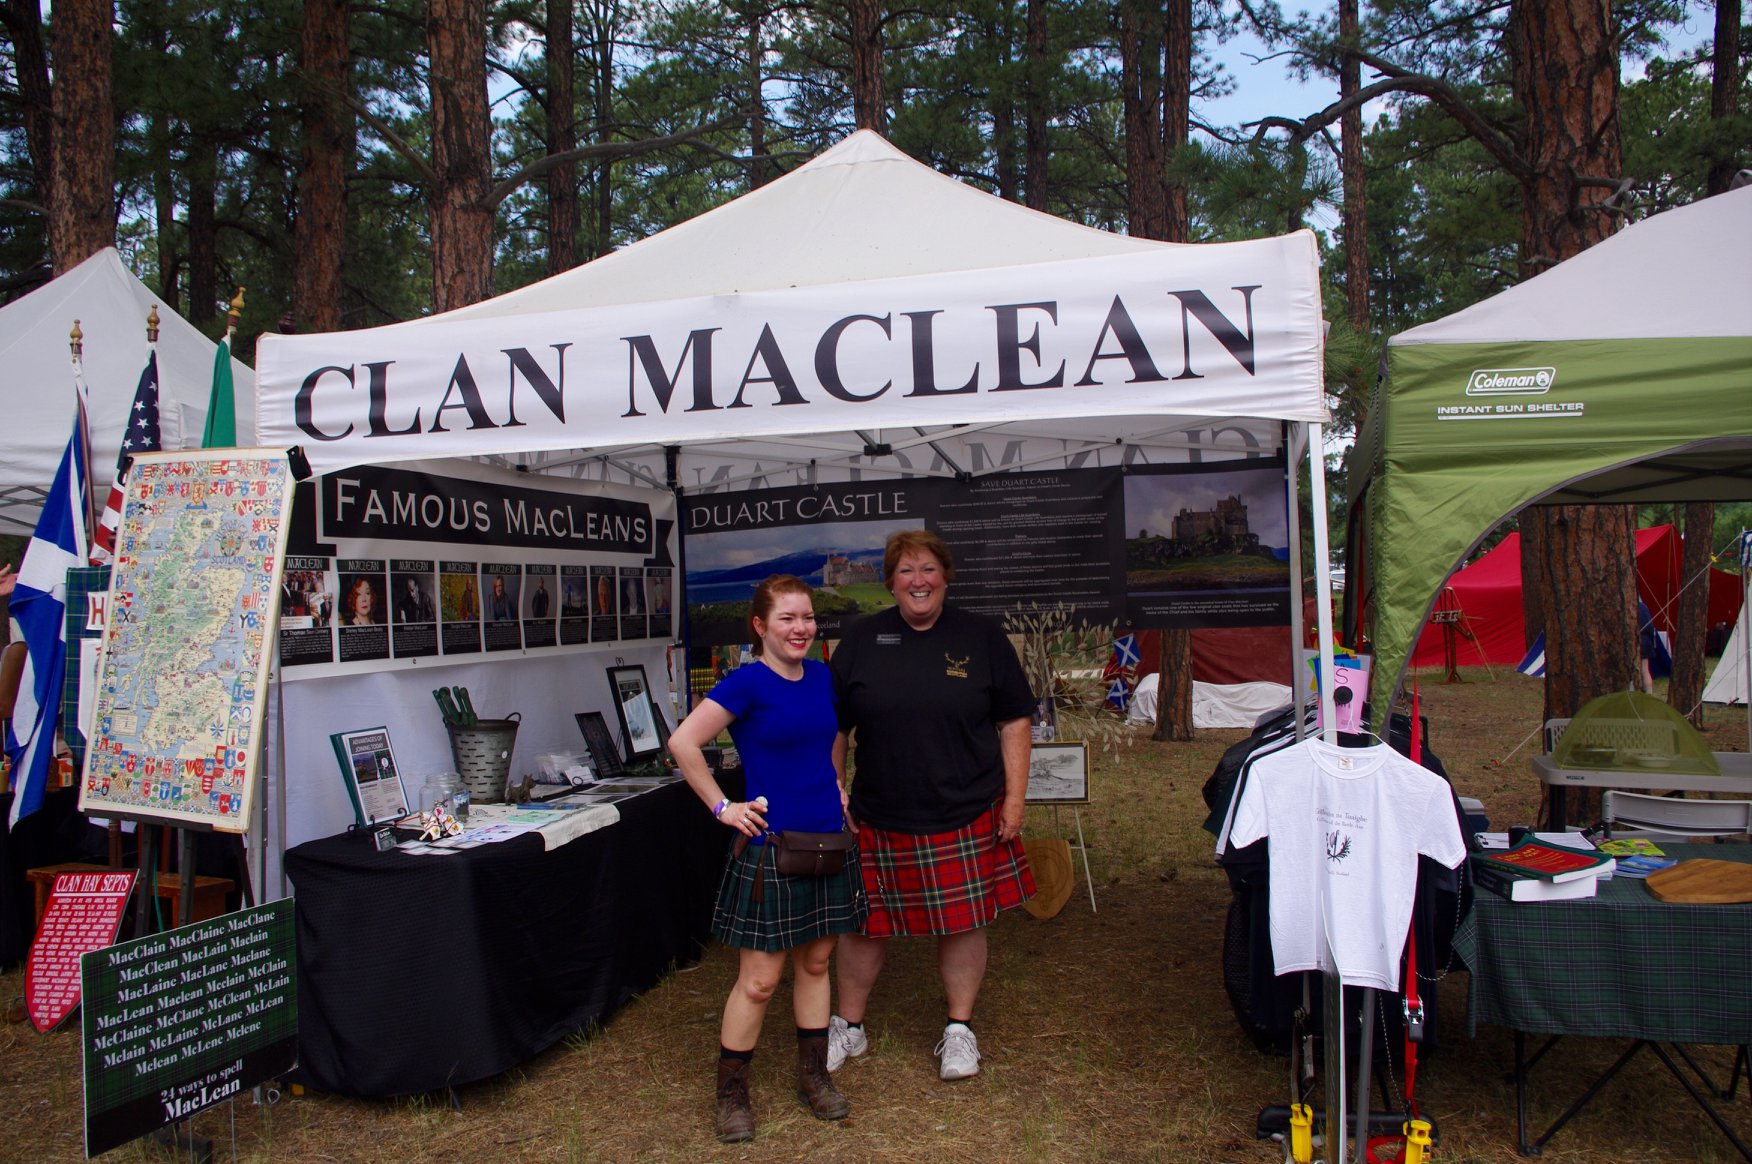 Clan Maclean